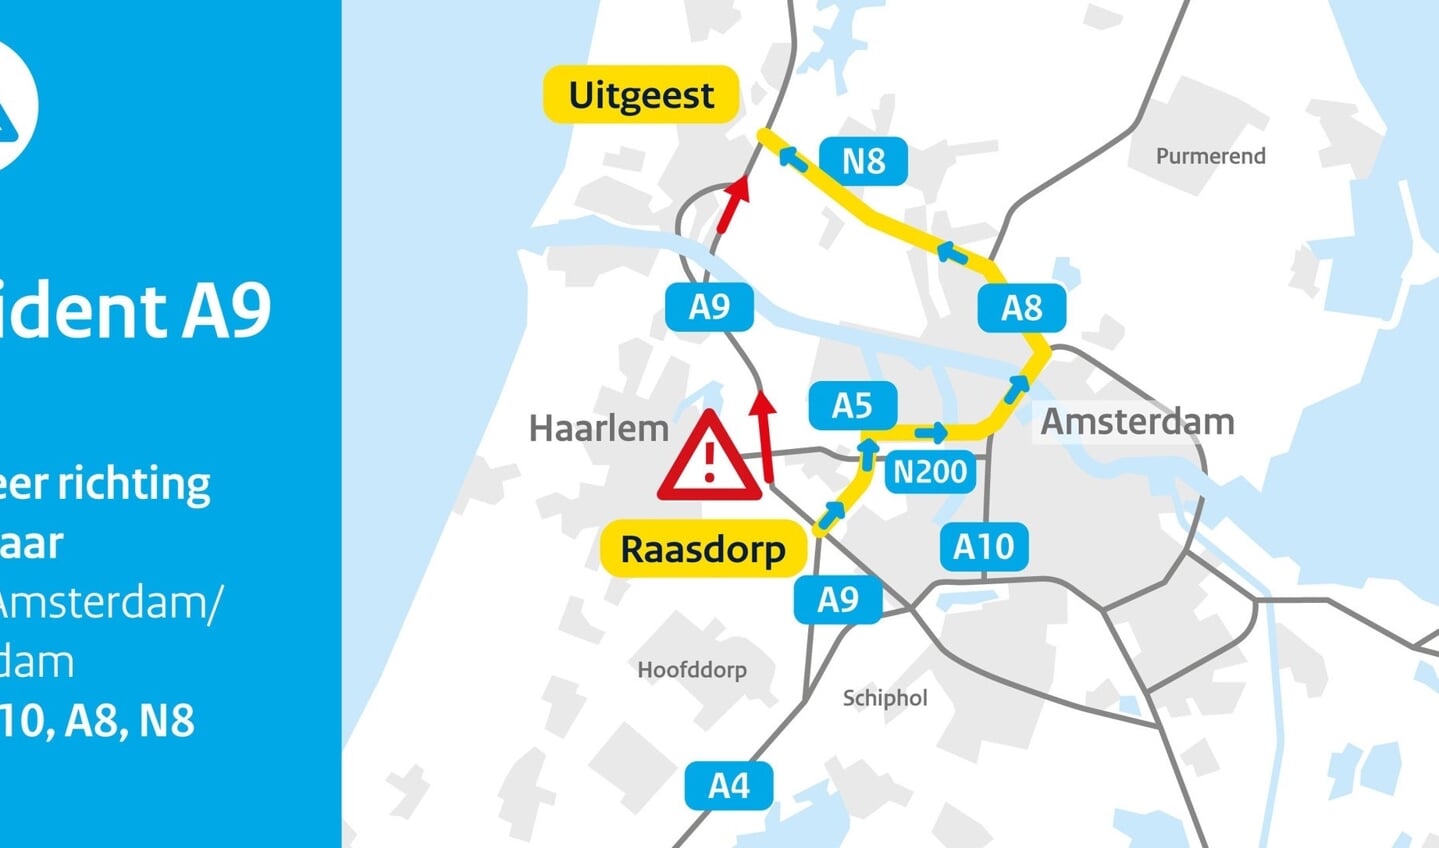 Beter omrijden via Amsterdam en Zaanstad (A10, A8/N8)